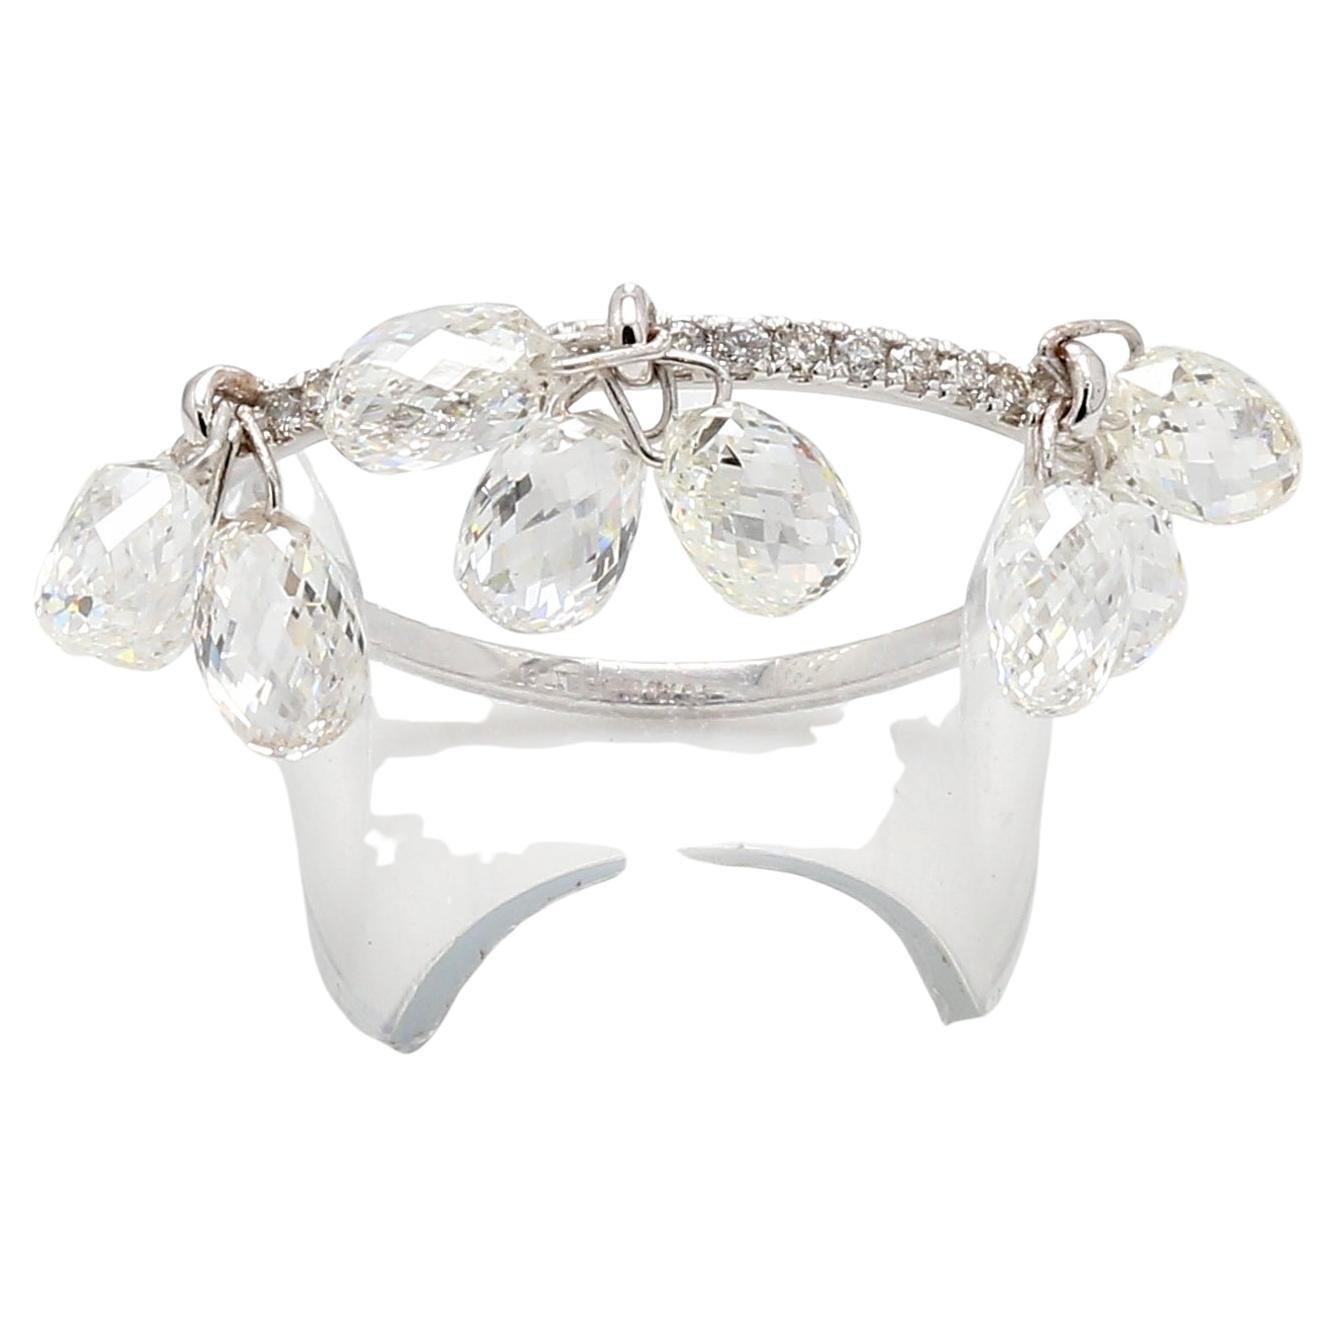 PANIM Bague pendentif en or blanc 18 carats avec briolette en diamant

Inspirée par la beauté d'une goutte de pluie, notre bague à diamants Briolette est une véritable merveille. Elle est composée de 9 briolettes de diamants blancs et d'une bande de